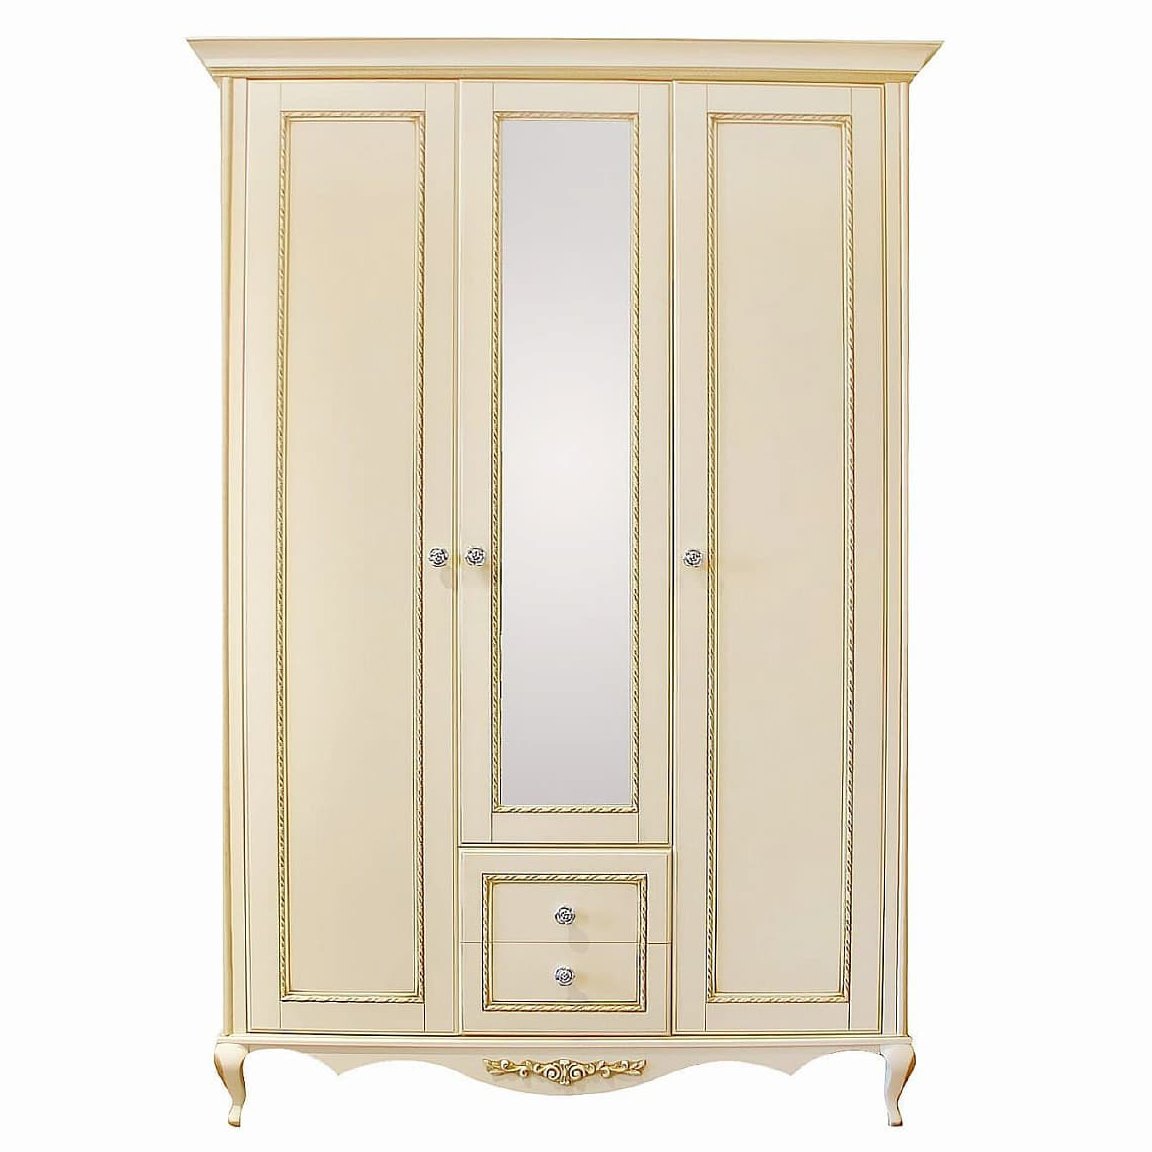 Шкаф платяной Timber Неаполь, 3-х дверный с зеркалом 159x65x227 см, цвет: ваниль с золотом (Т-523/VO)Т-523